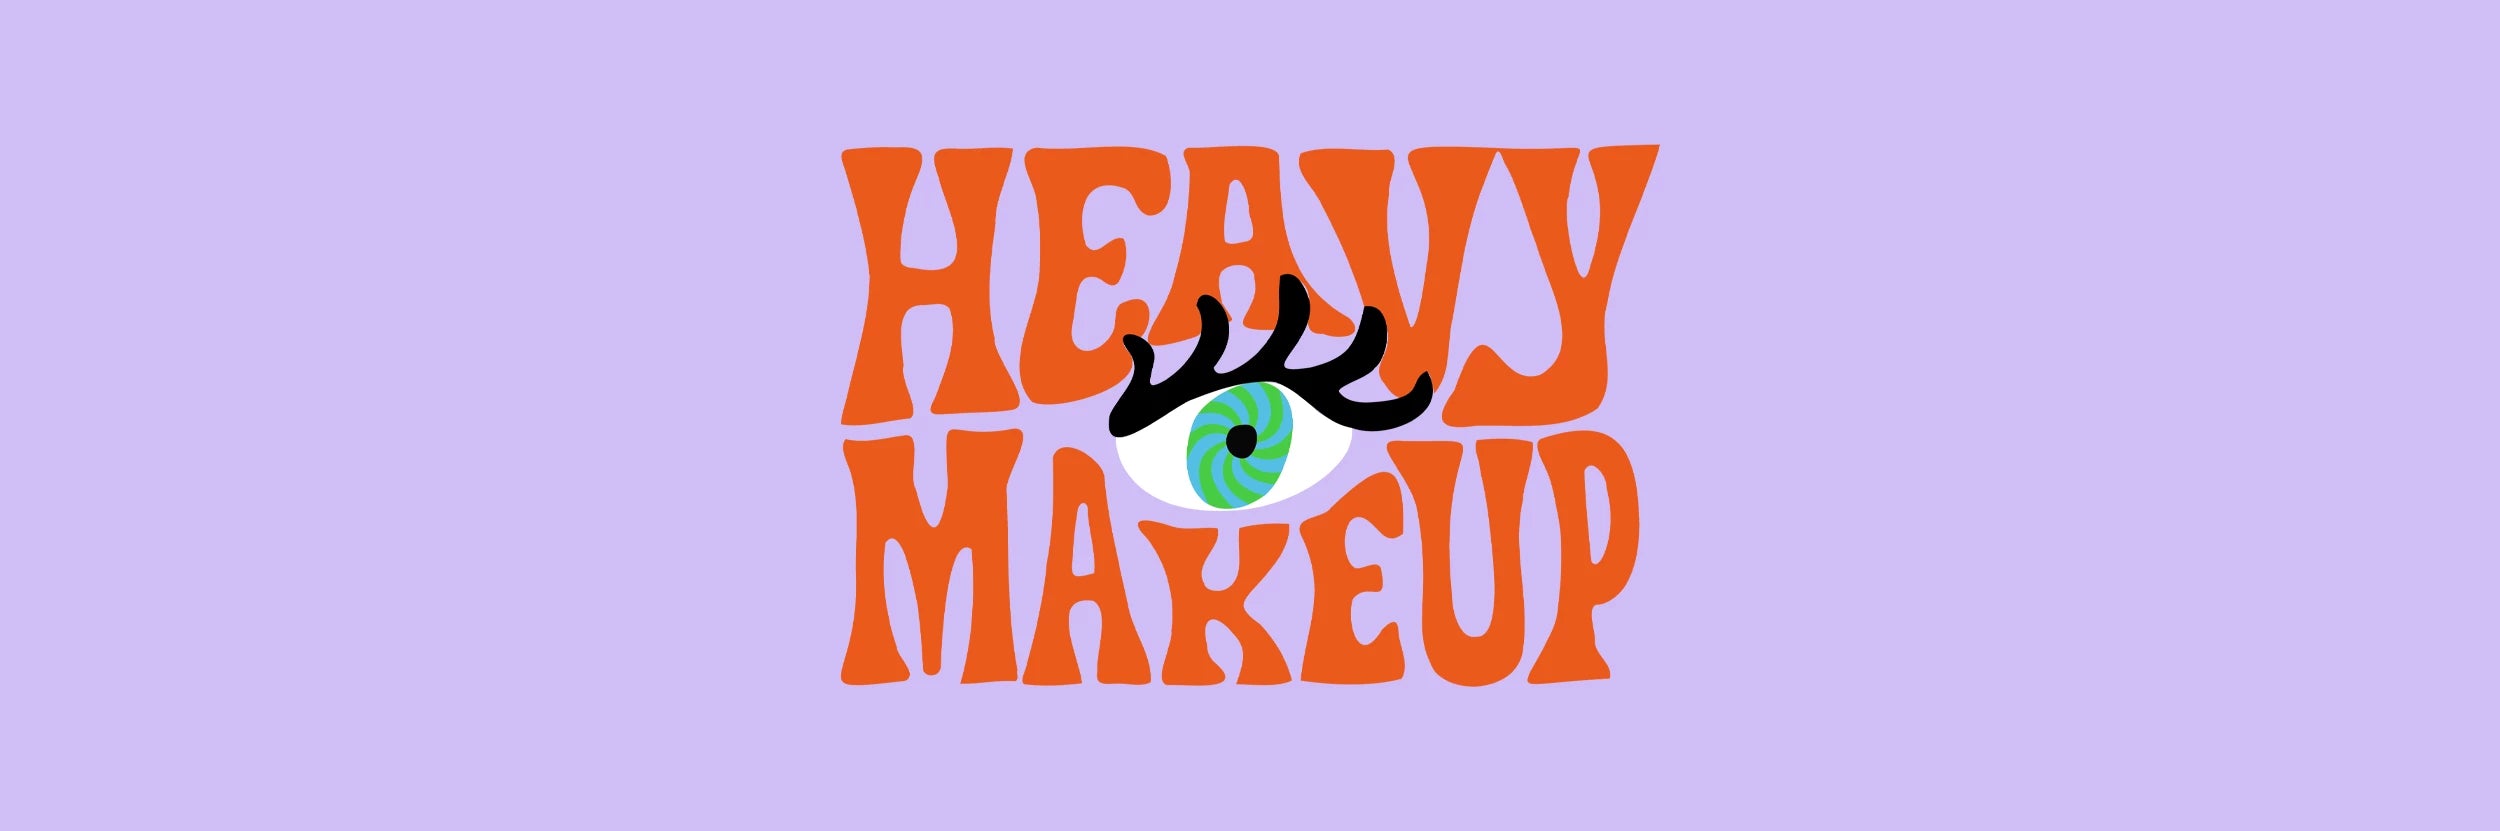 Heavy MakeUp